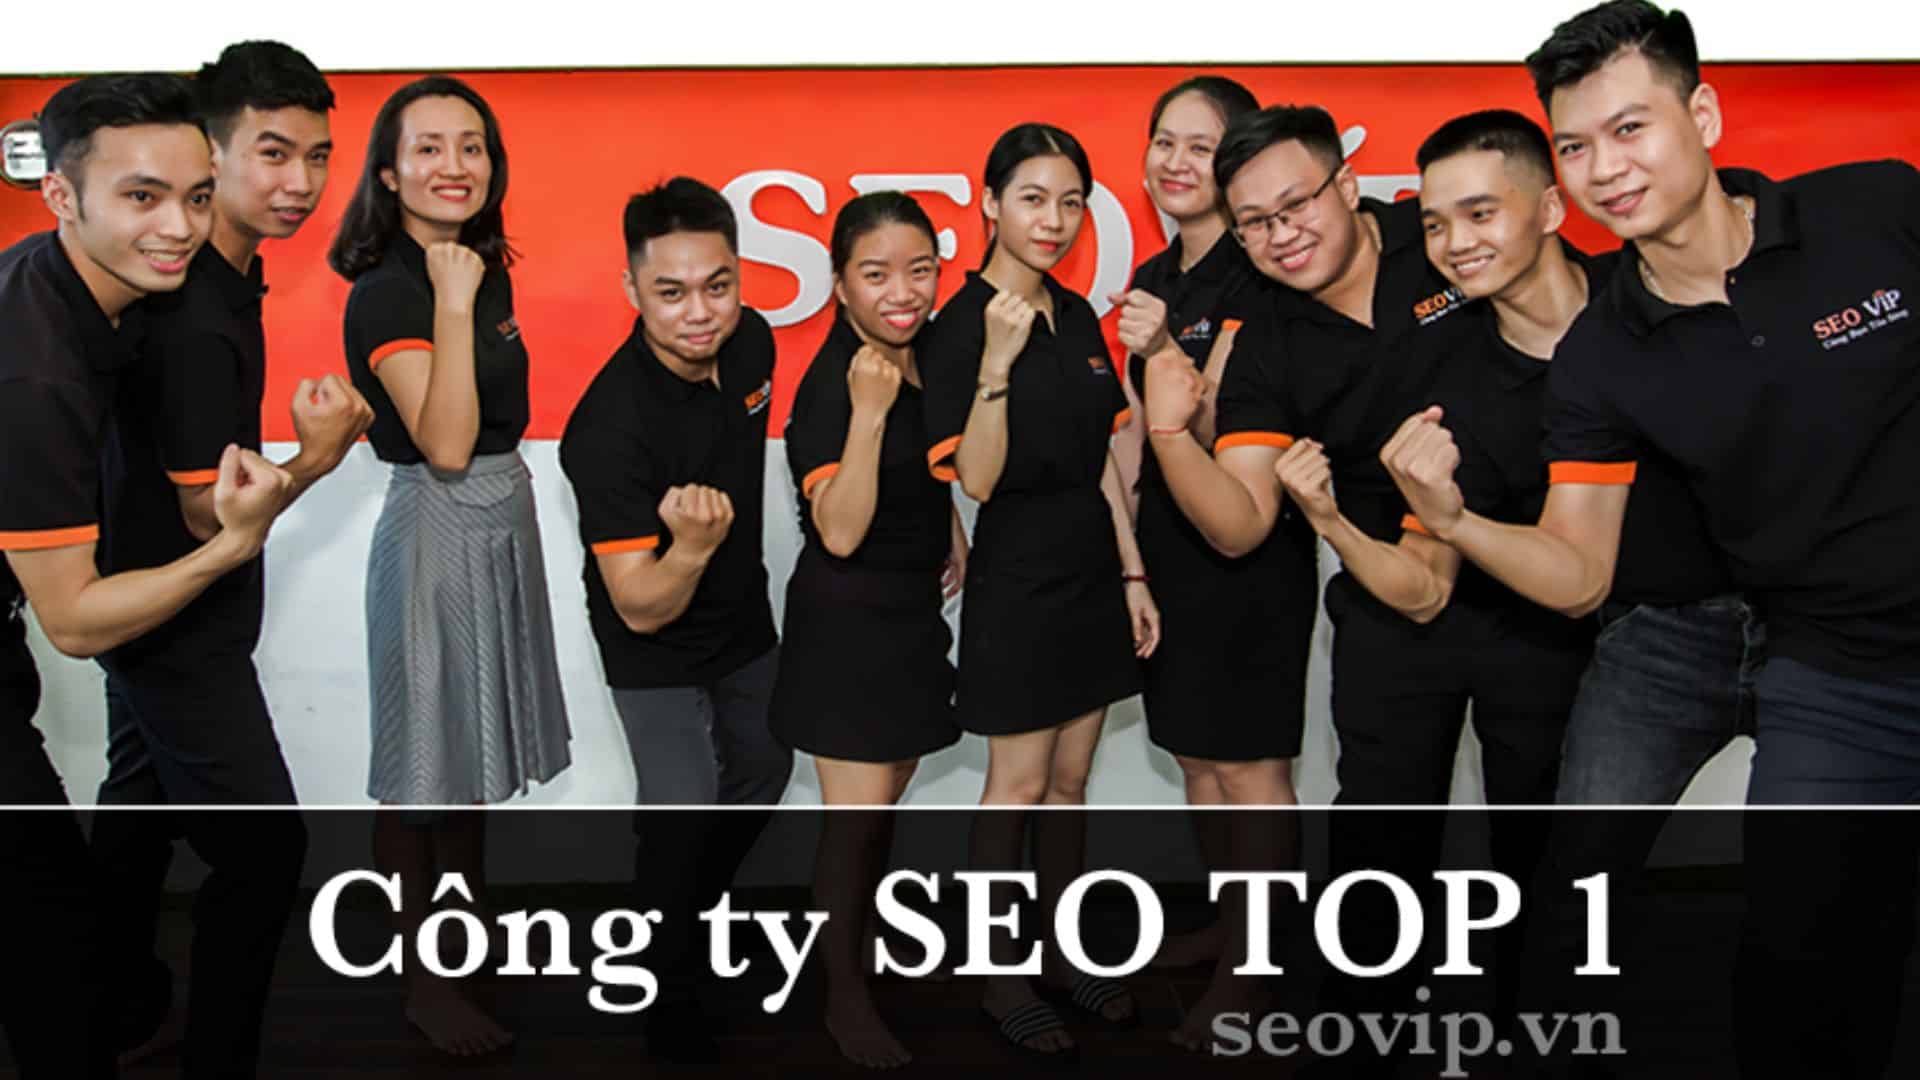 Seovip – Trung tâm đào tạo SEO Đà Nẵng 